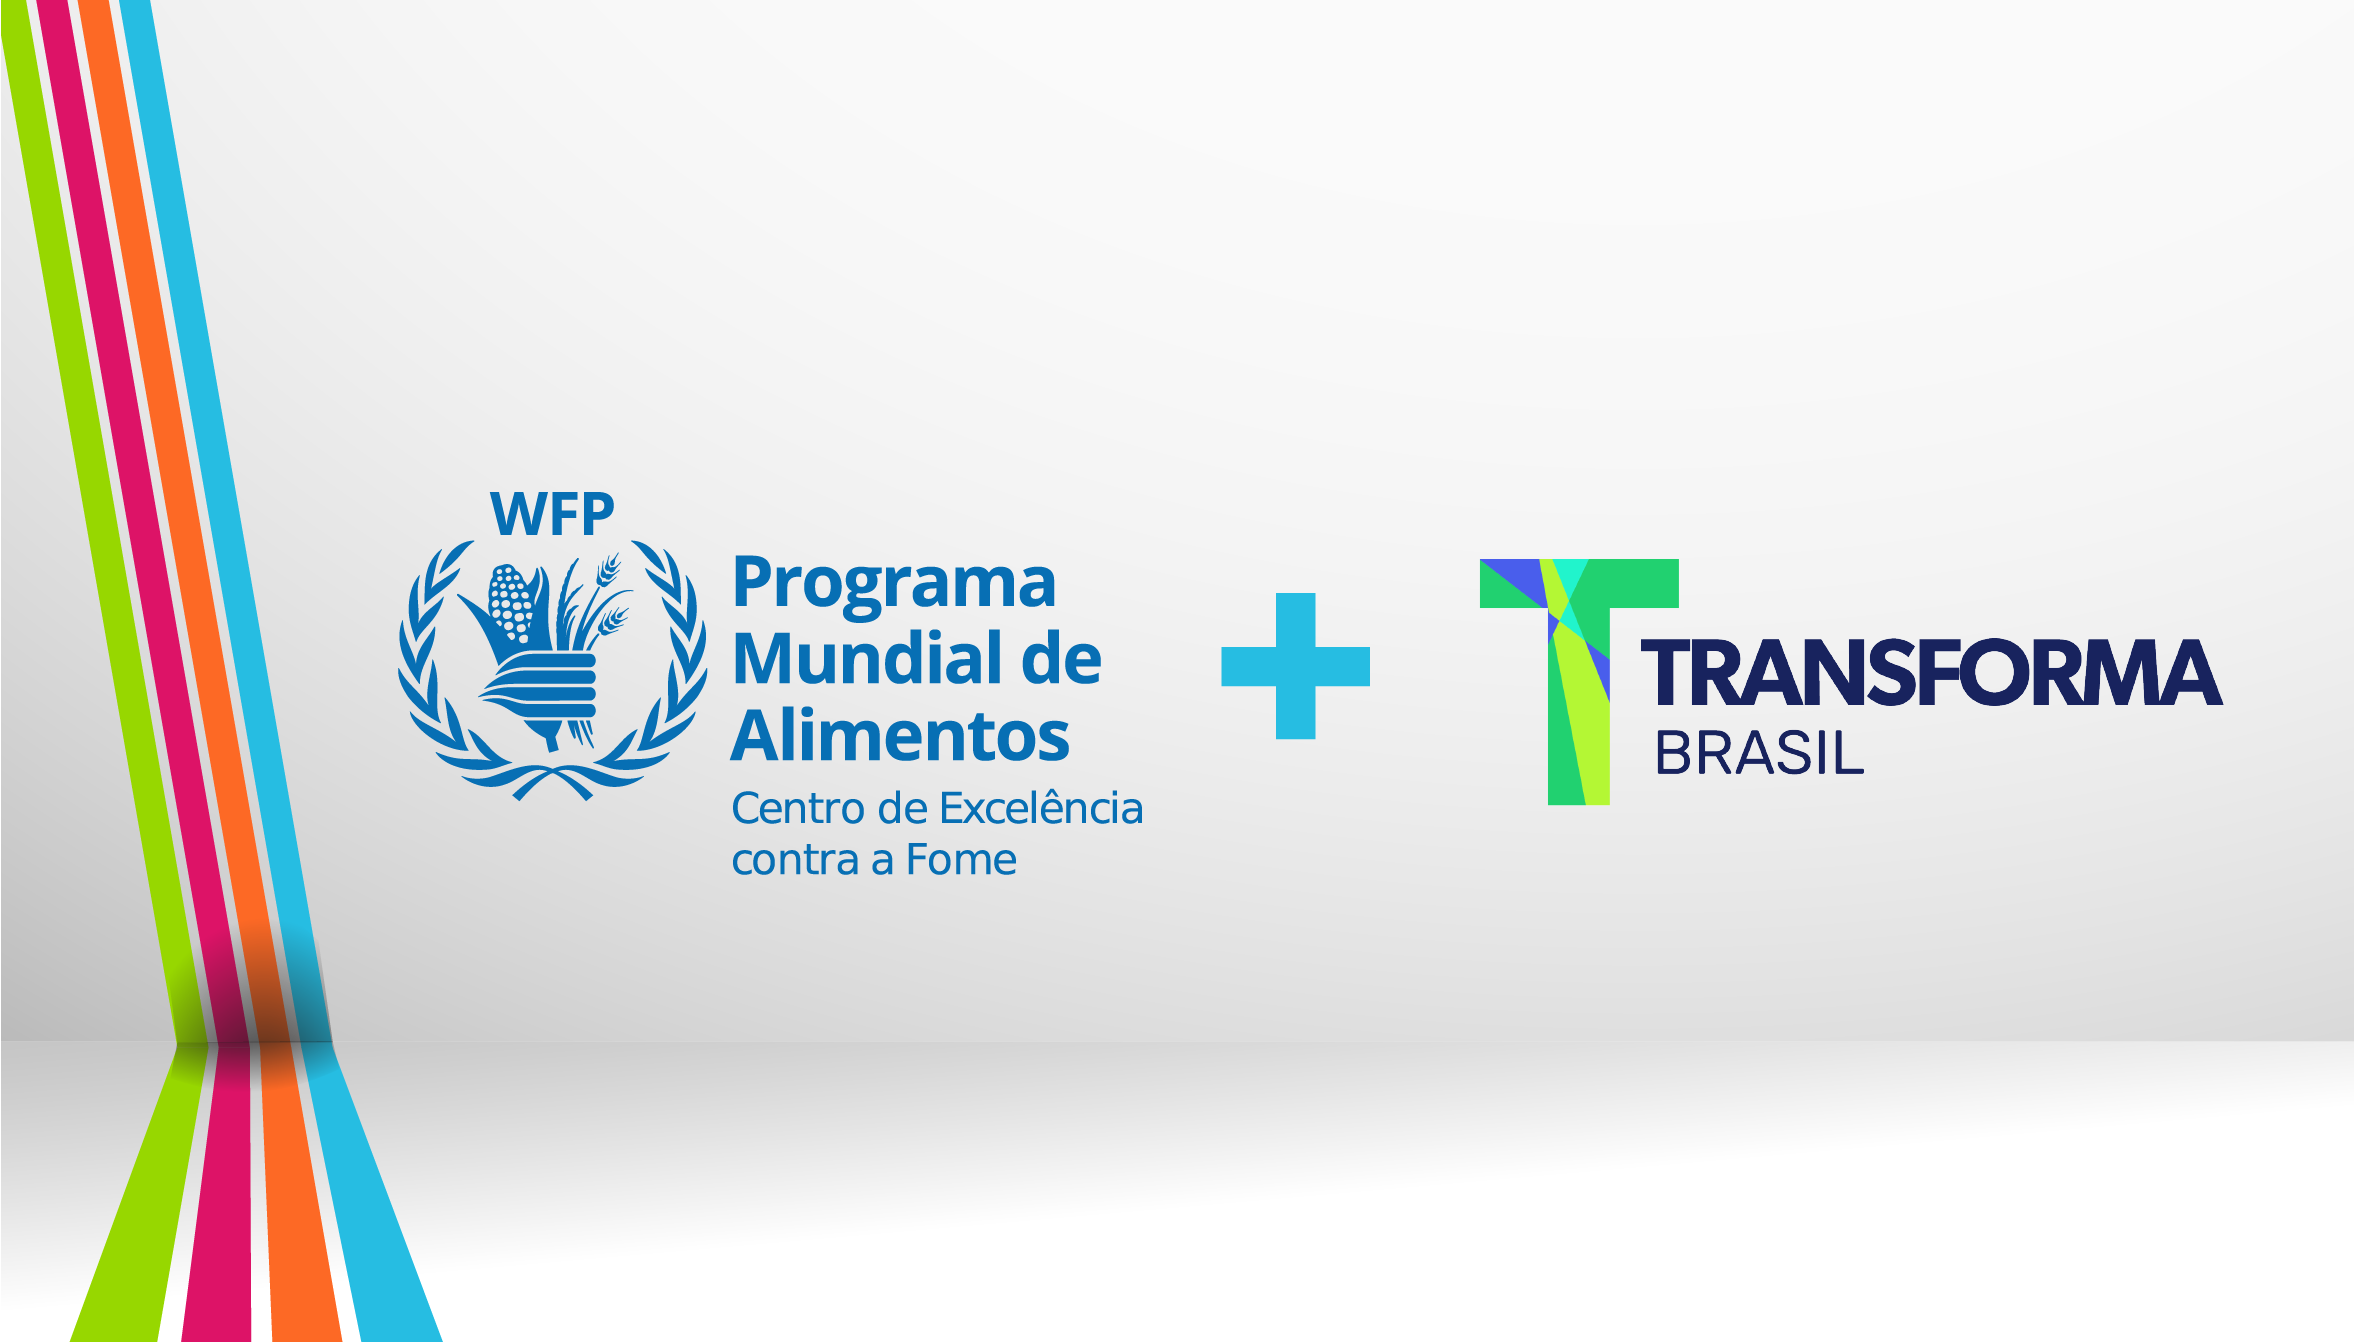 Centro de Excelência do WFP e Transforma Brasil firmam parceria para desenvolvimento de soluções de combate à fome